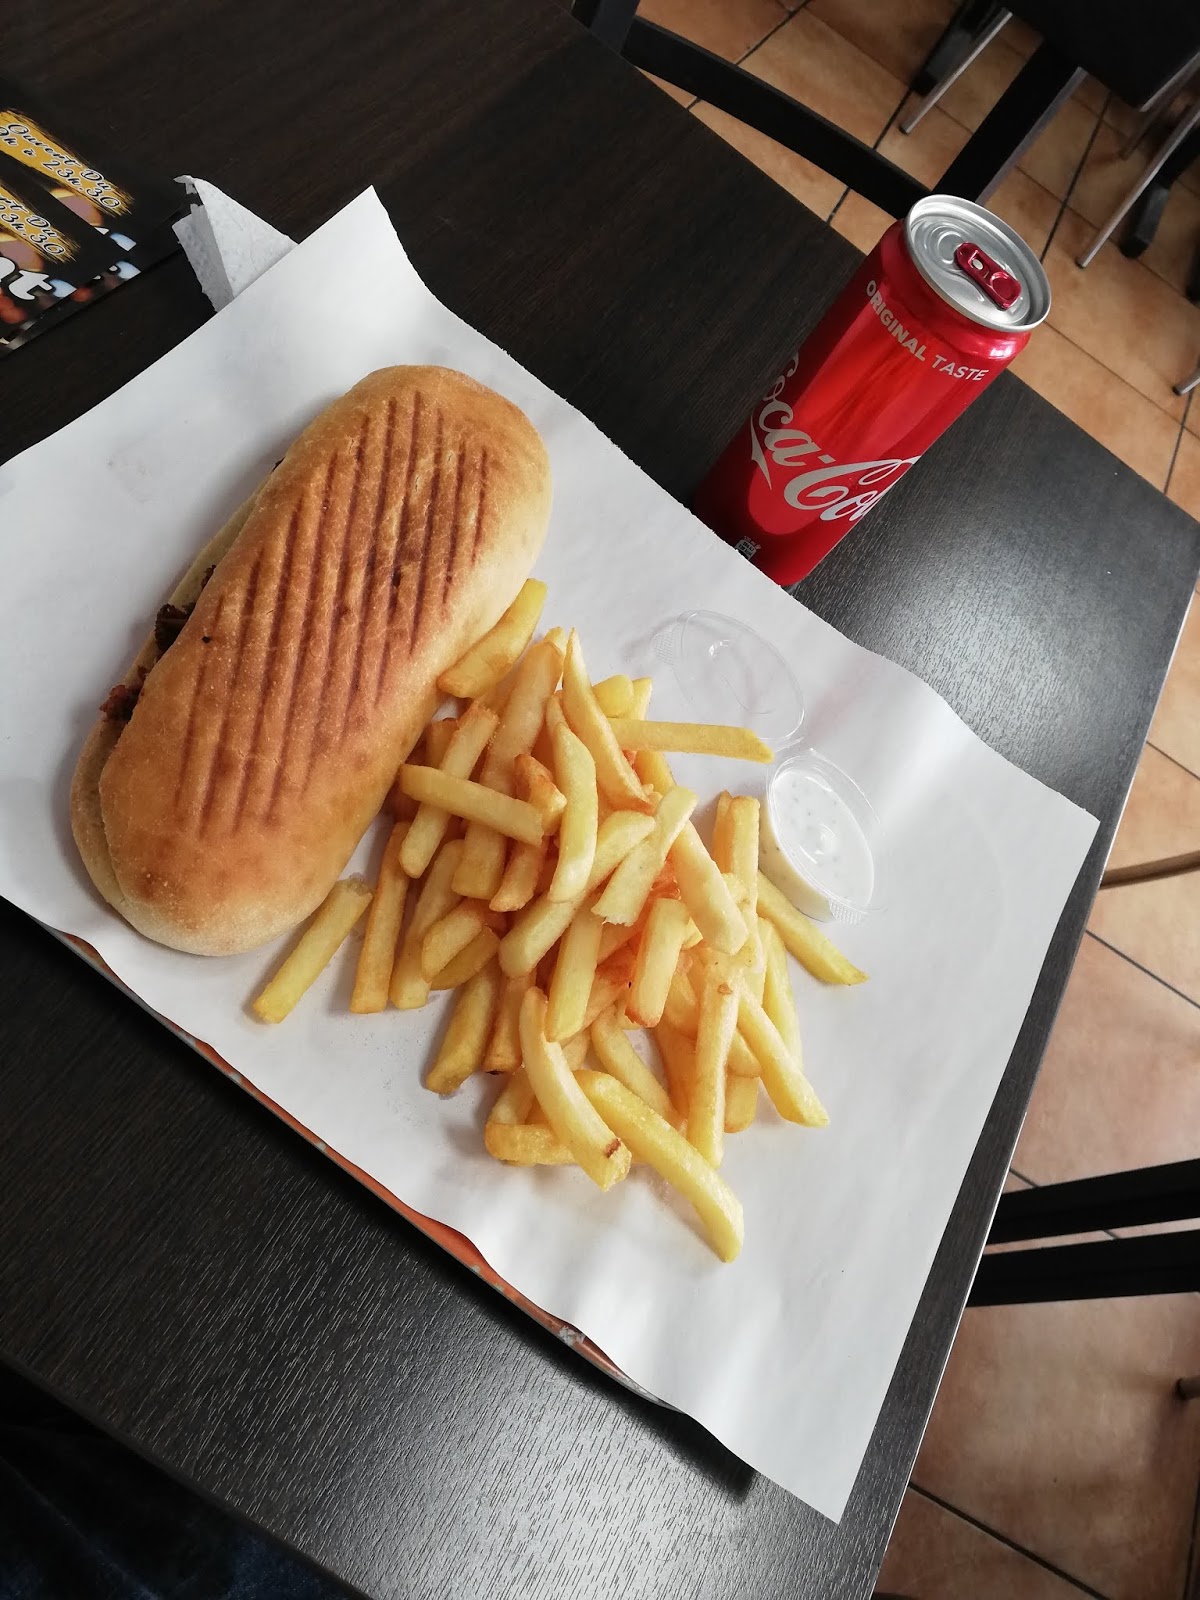 Snack nour Couscous Sur Place, Emporter, Tacos, Burger hallal a Marseille